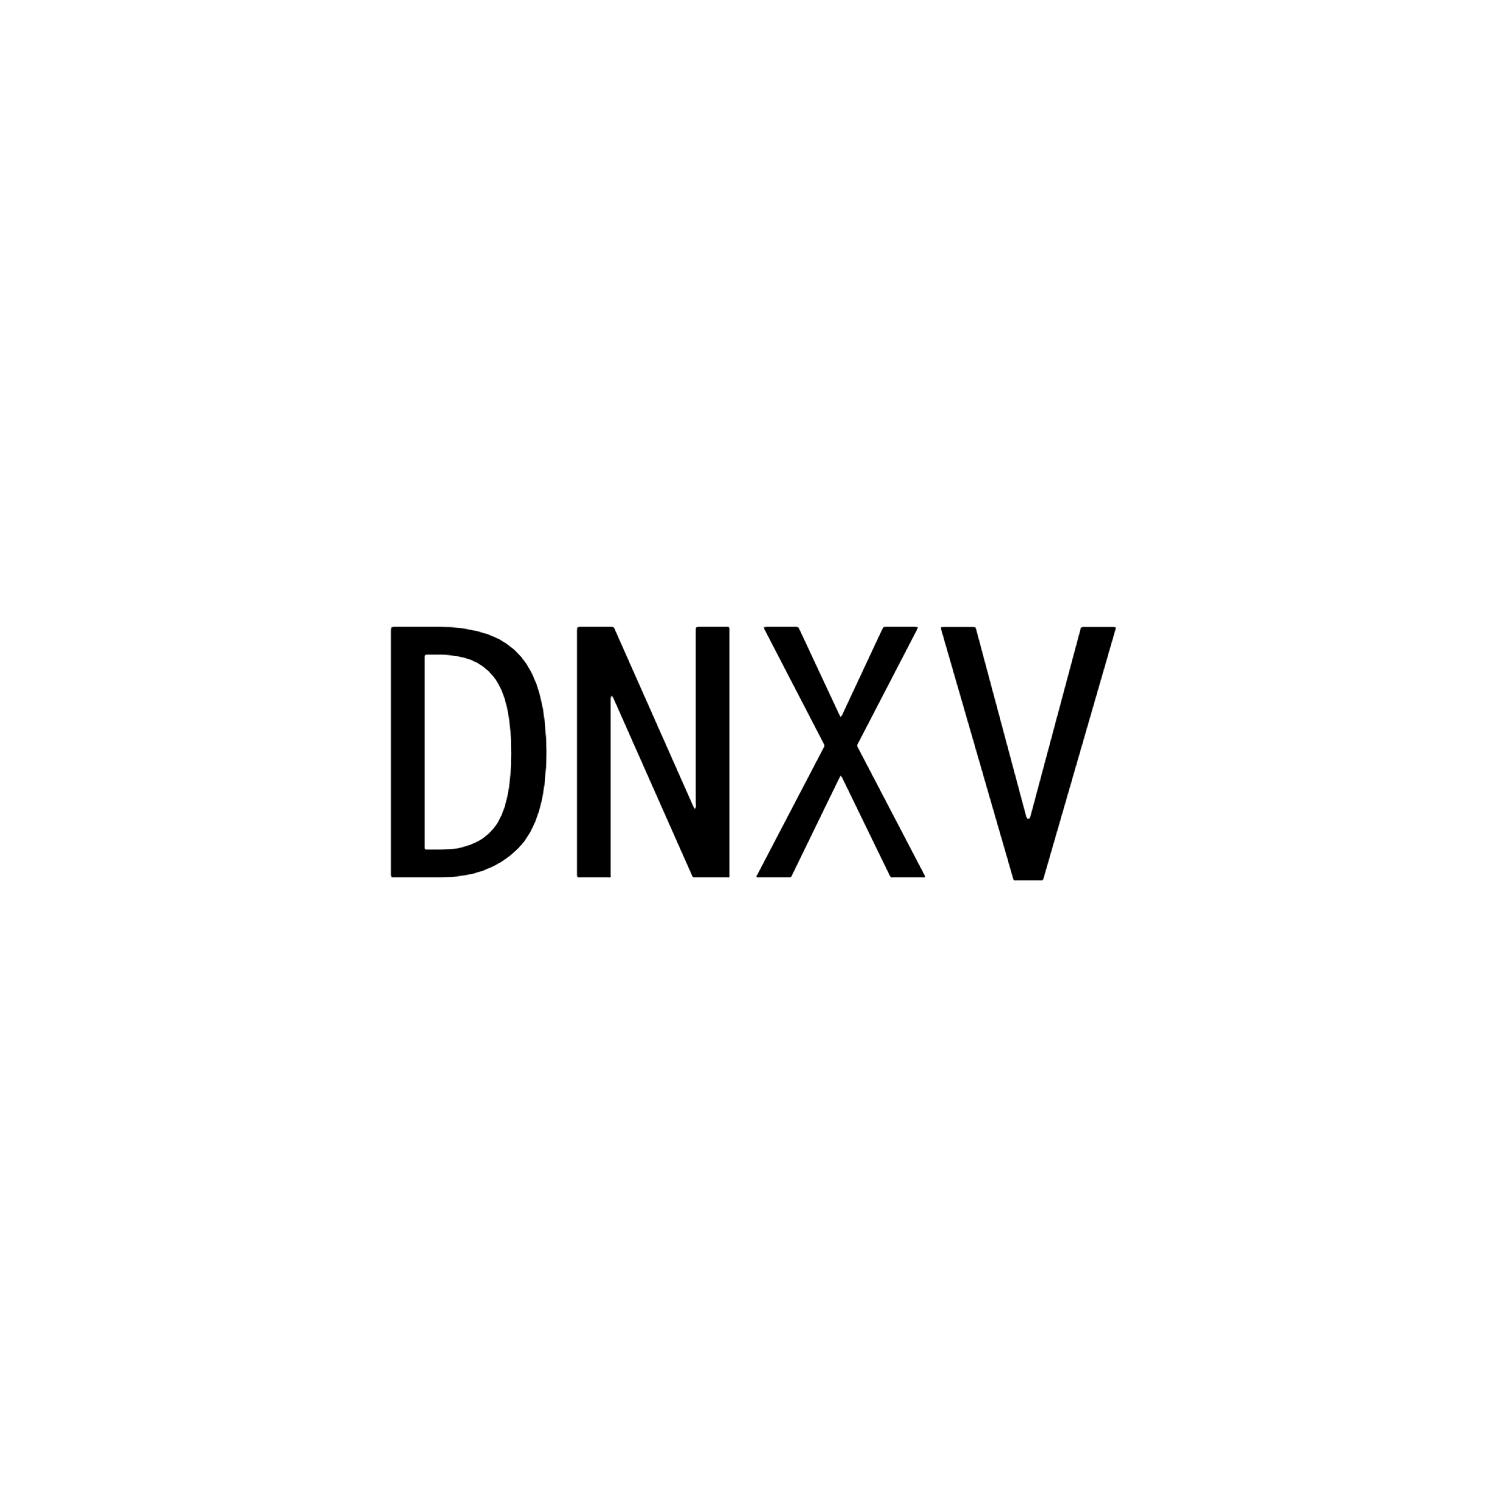 DNXV